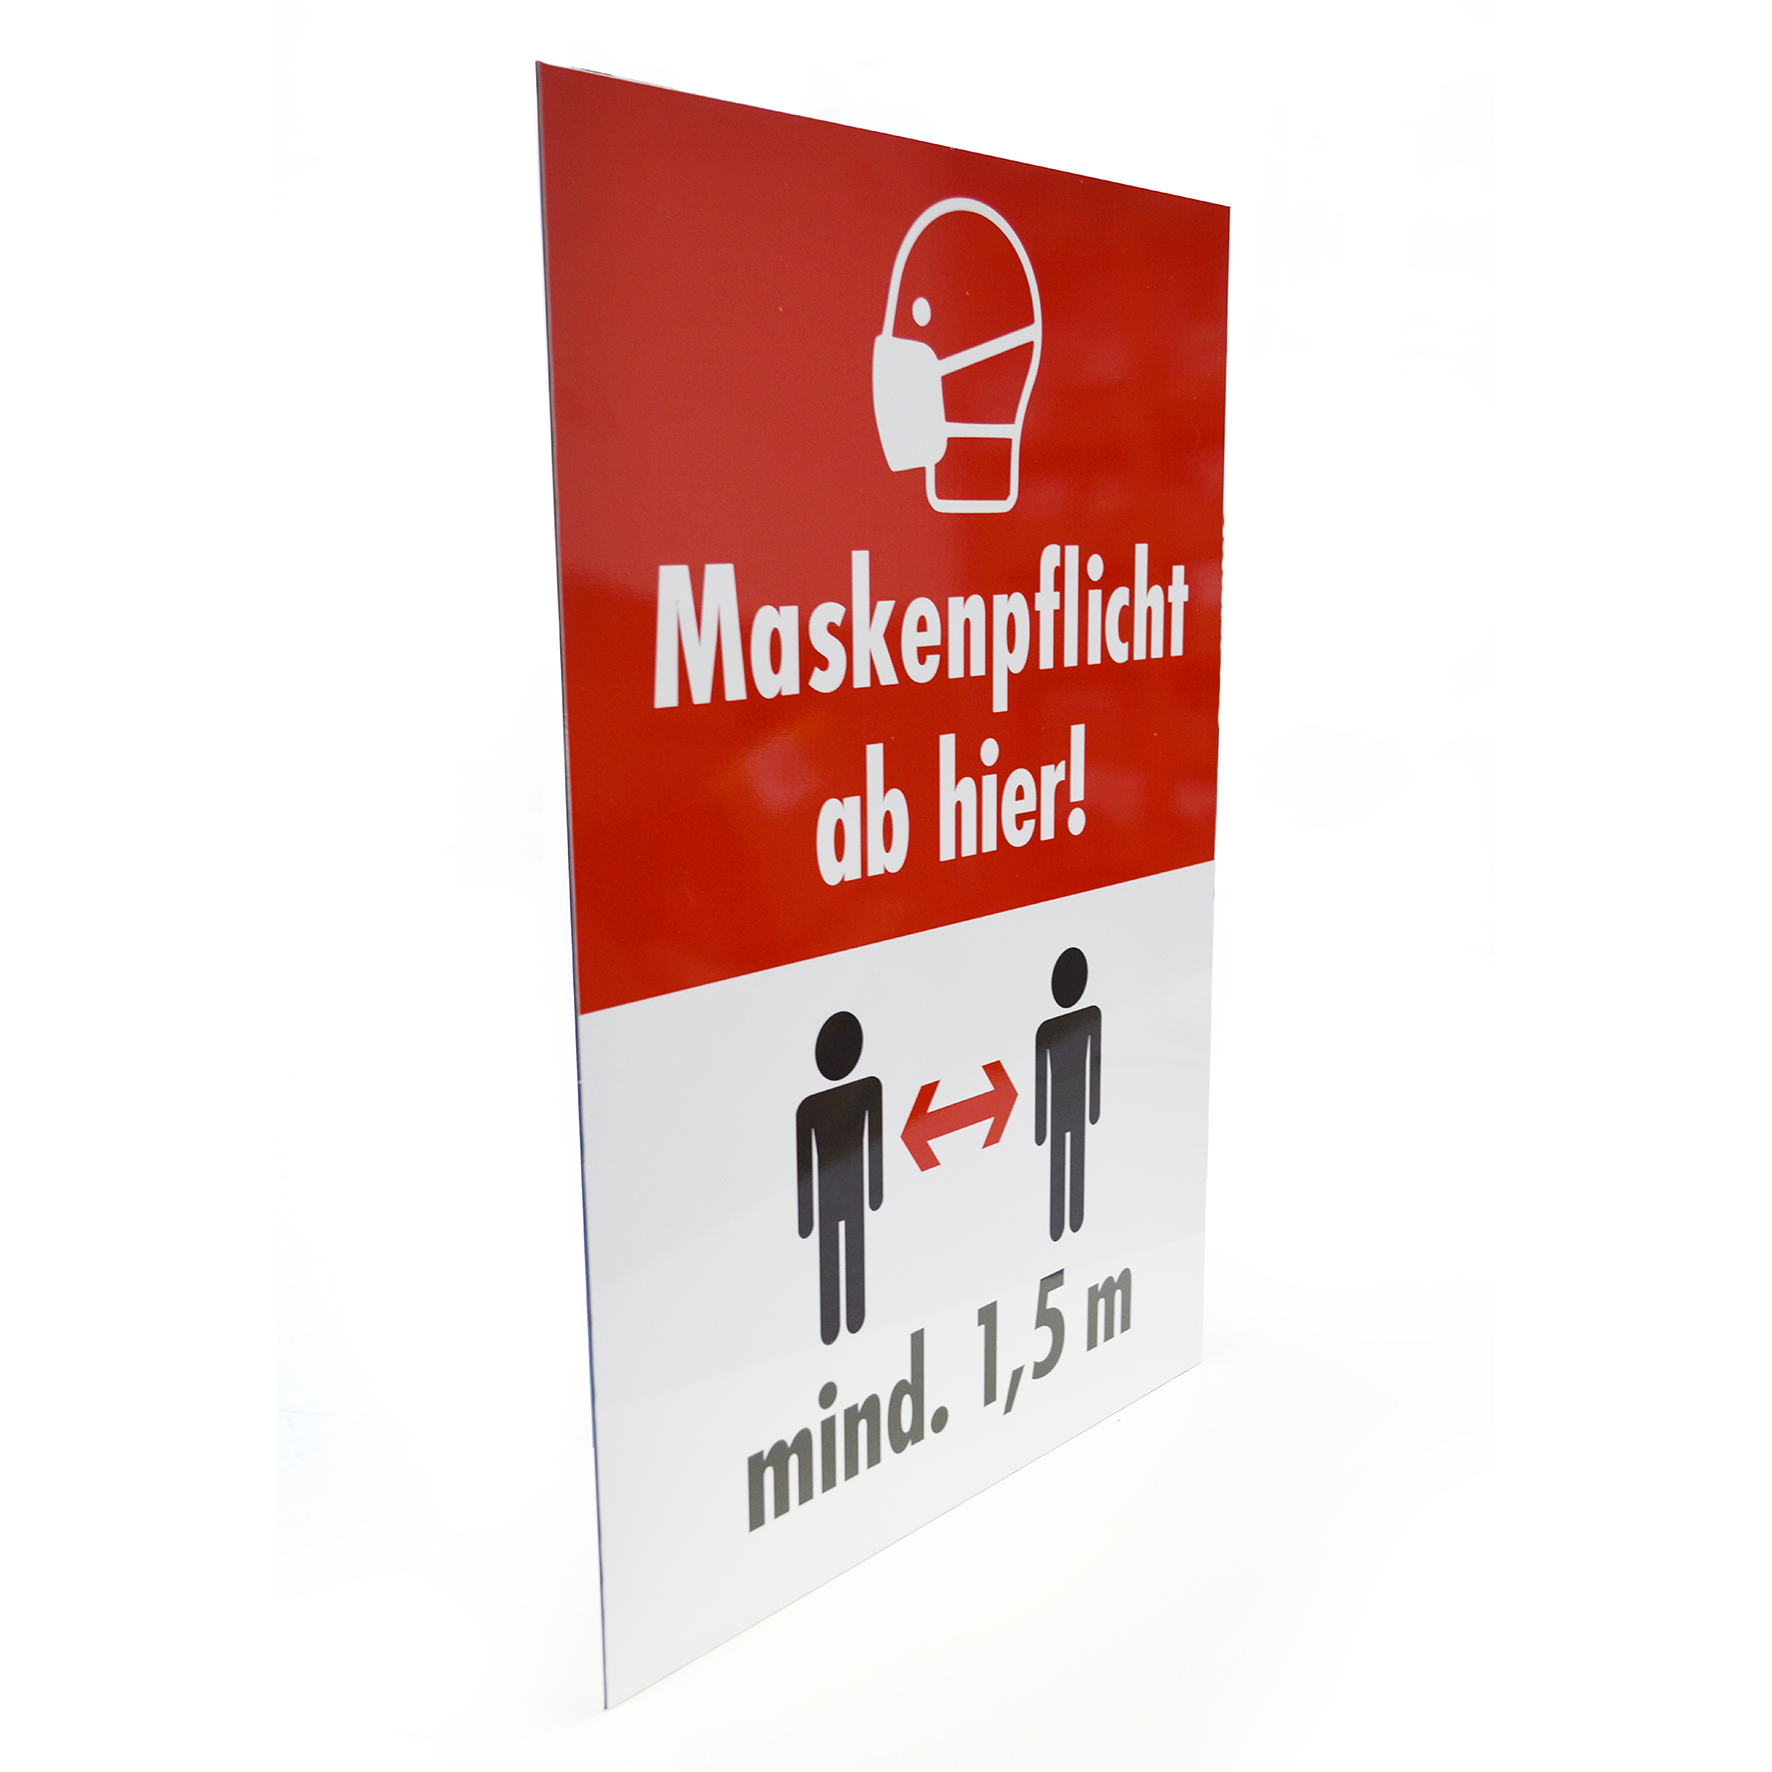 XL-Hinweis-Schilder | 600 x 420 mm |  Maskenpflicht und 1,5 m Mindestabstand | auf 3 mm Alu-Verbundplatte